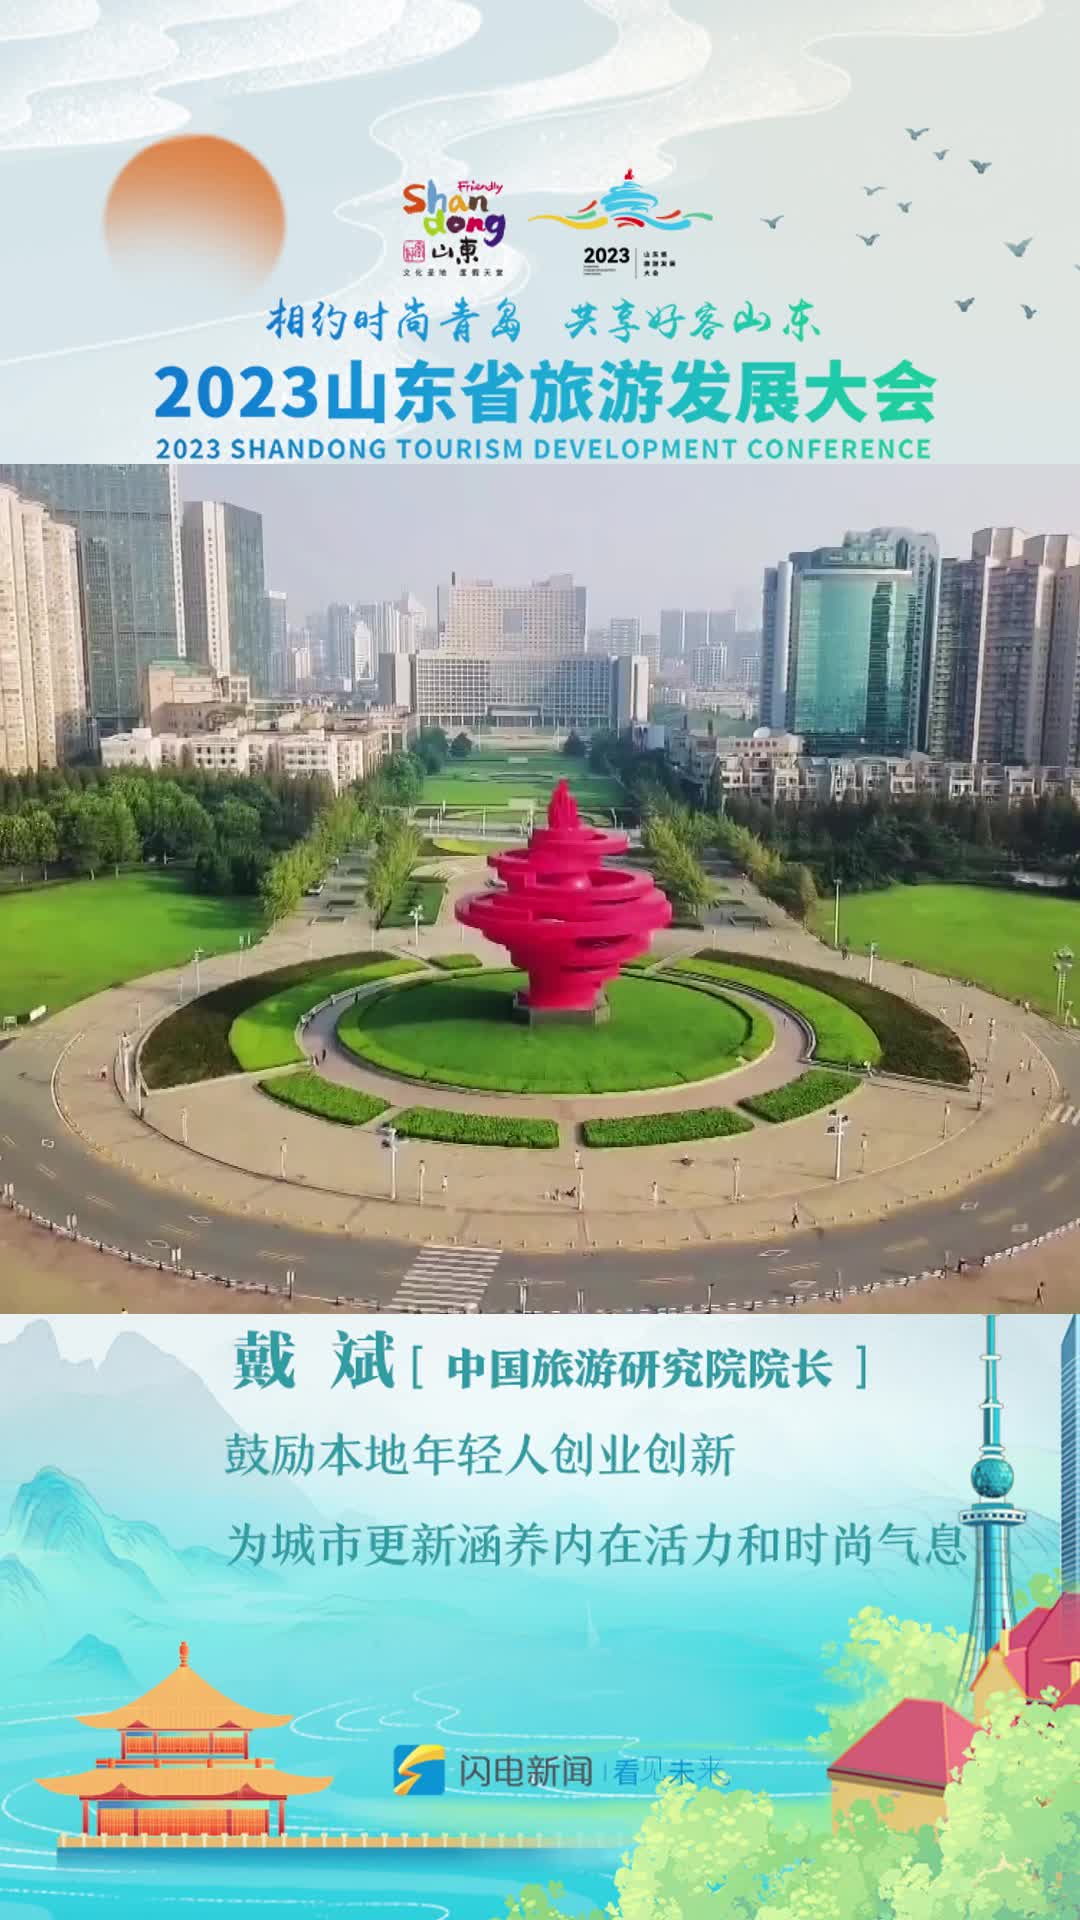 中国旅游研究院院长戴斌：鼓励本地年轻人创业创新 为城市更新涵养内在活力和时尚气息